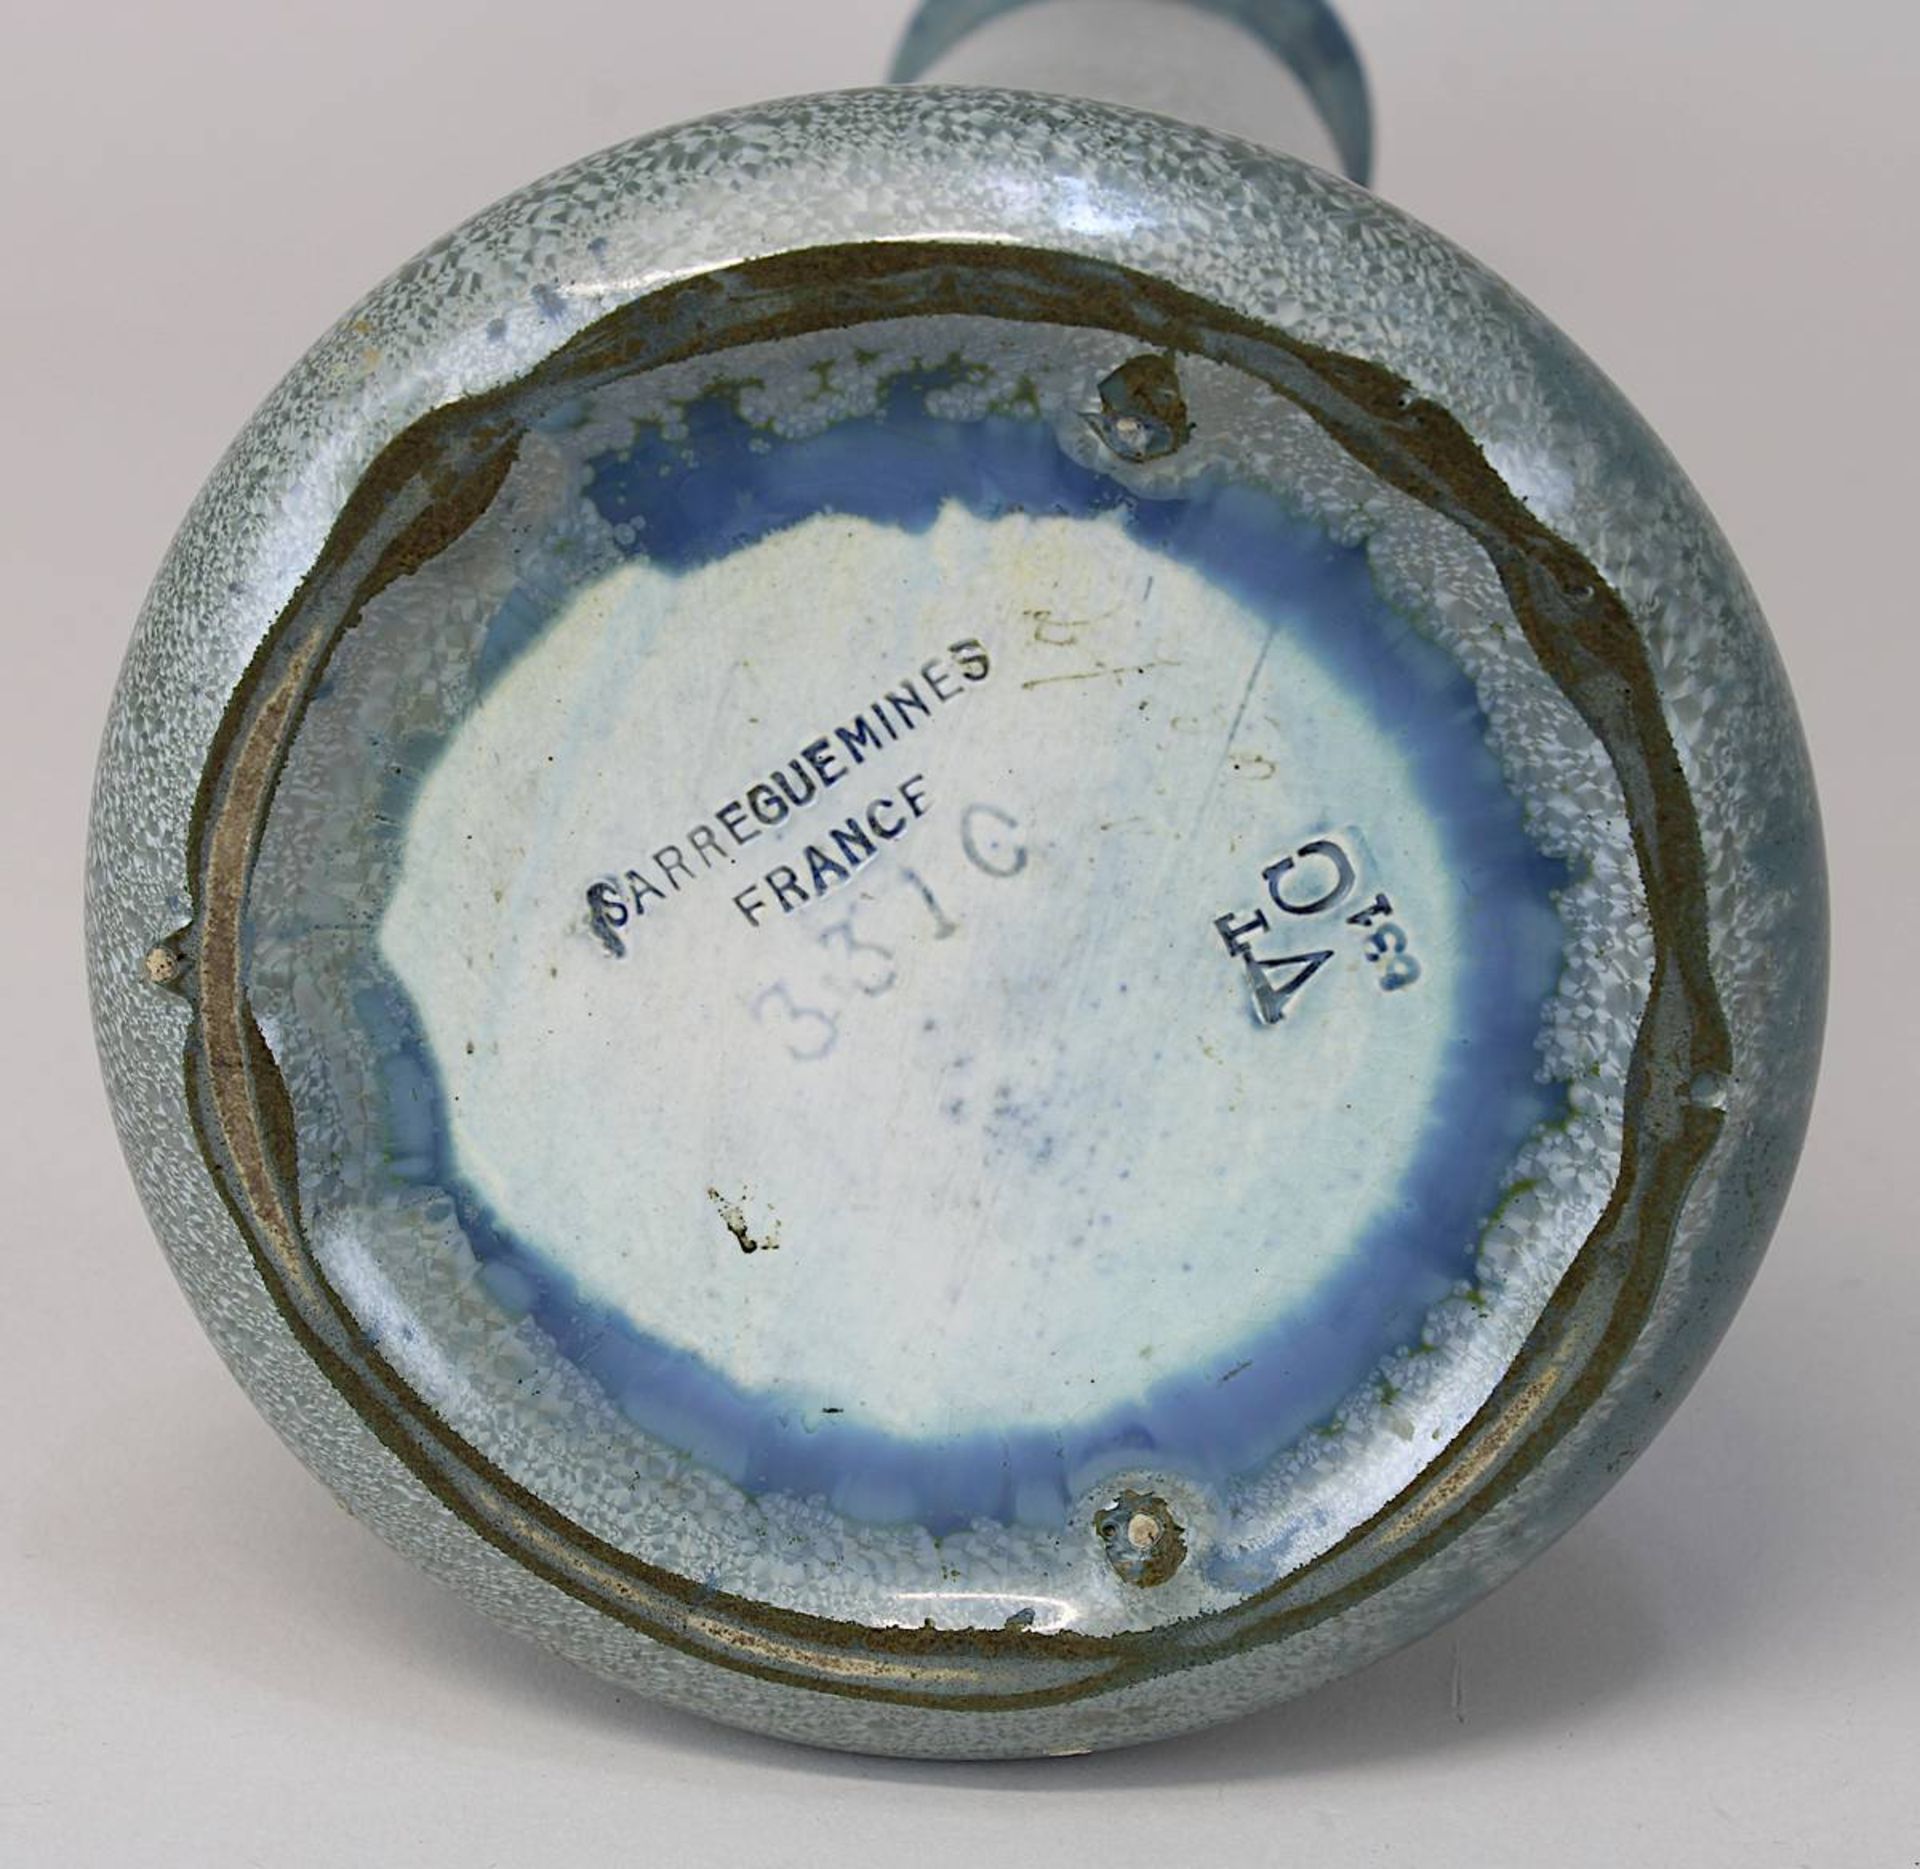 Sarreguemines Jugendstil-Keramikvase mit Kristallglasur, heller Scherben, taubenblau-grüngraue - Image 2 of 2